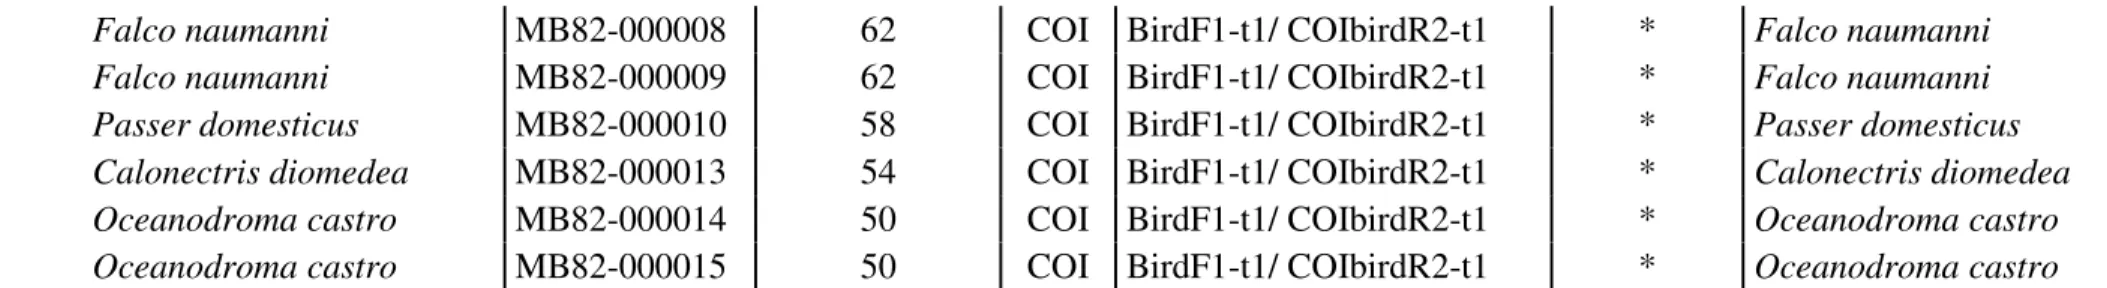 Tabela 9. Espécies de aves utilizadas e identificadas morfologicamente, temperatura de annealing, gene amplificado, primers e condição de mix utilizada, identificação no  GenBank/BOLD e tamanho do fragmento, cuja correspondência com as sequências das bases